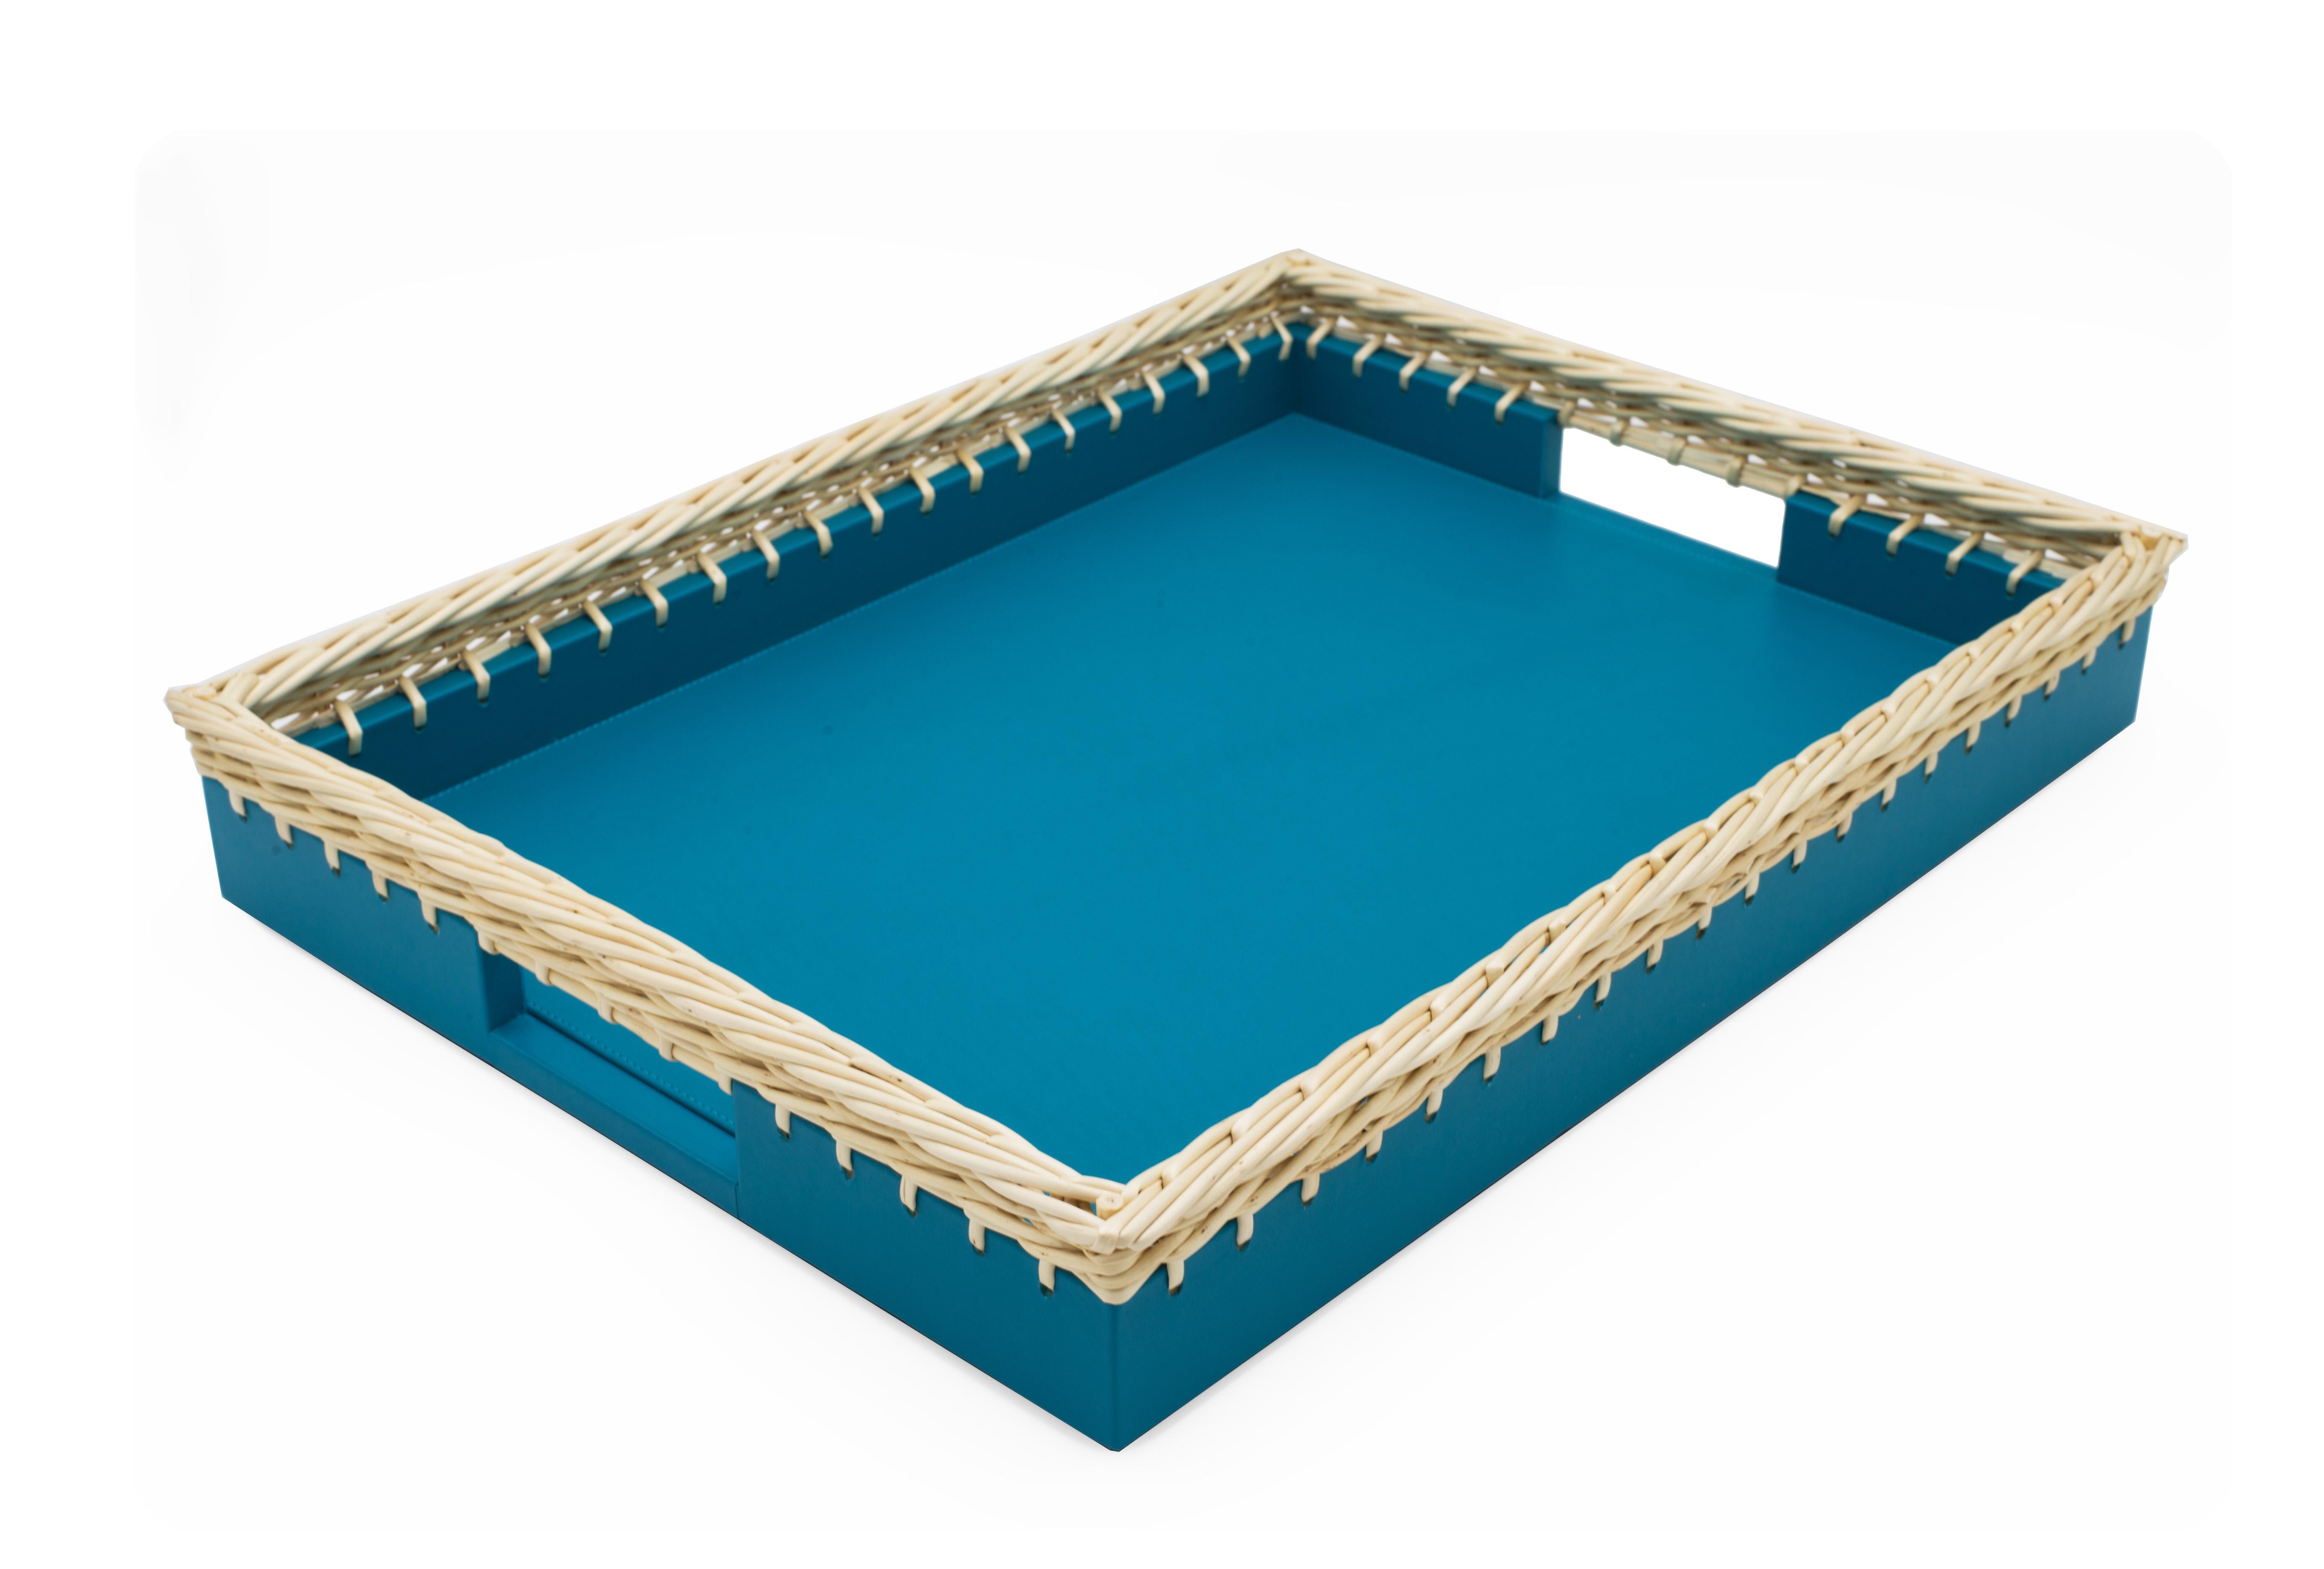 Plateau rectangulaire contemporain en cuir bleu avec un bord en bois de saule tressé (fabriqué en Italie).